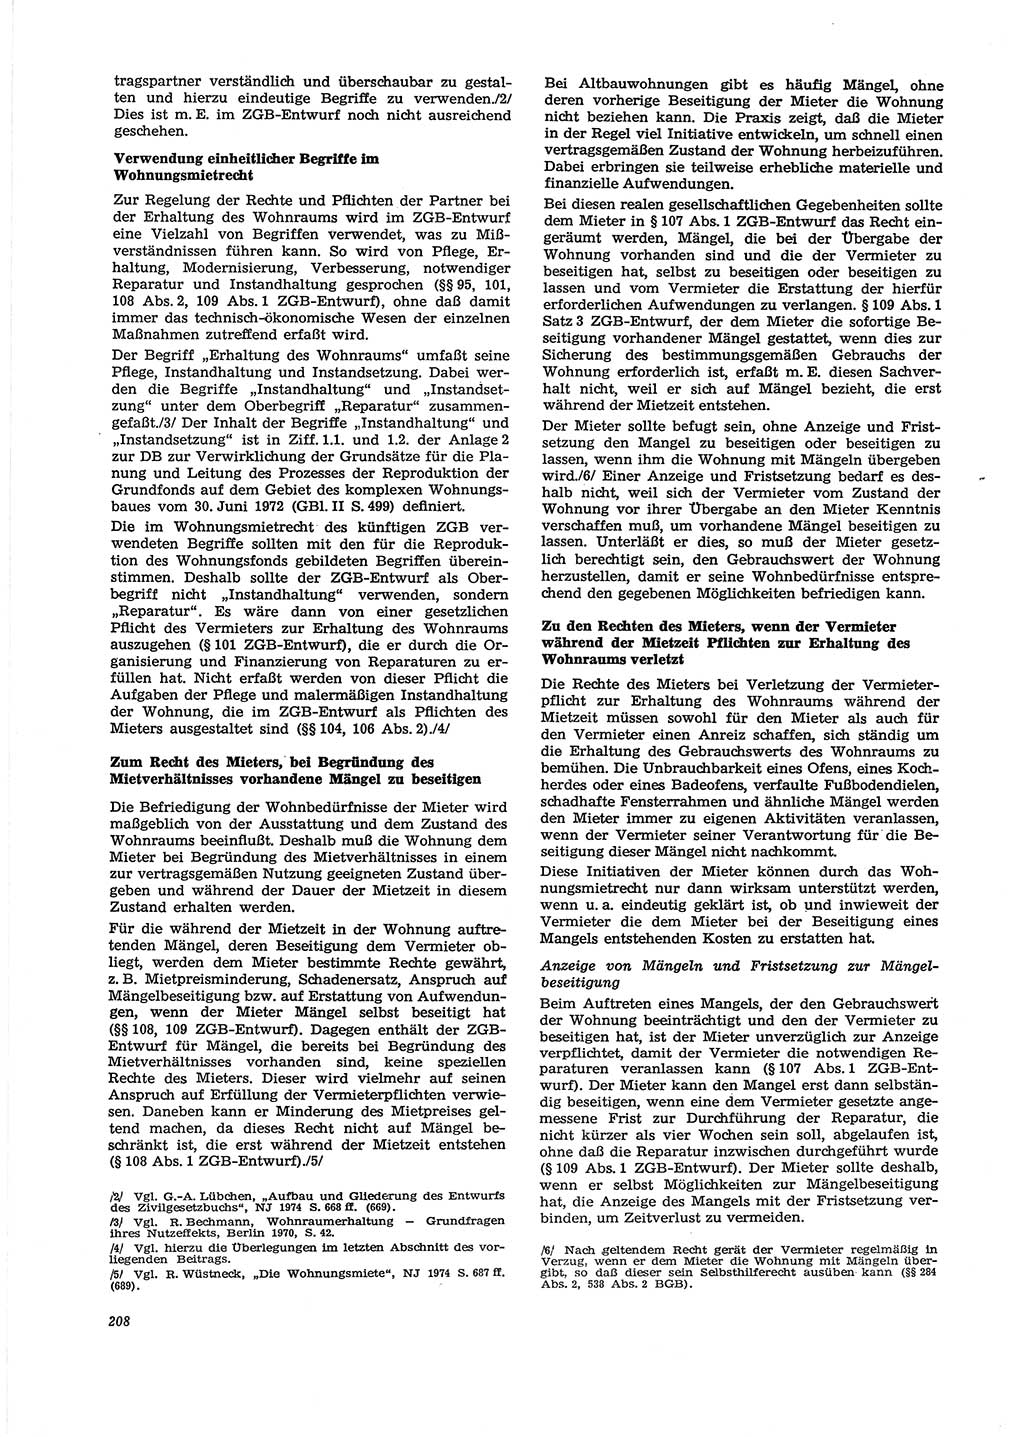 Neue Justiz (NJ), Zeitschrift für Recht und Rechtswissenschaft [Deutsche Demokratische Republik (DDR)], 29. Jahrgang 1975, Seite 208 (NJ DDR 1975, S. 208)